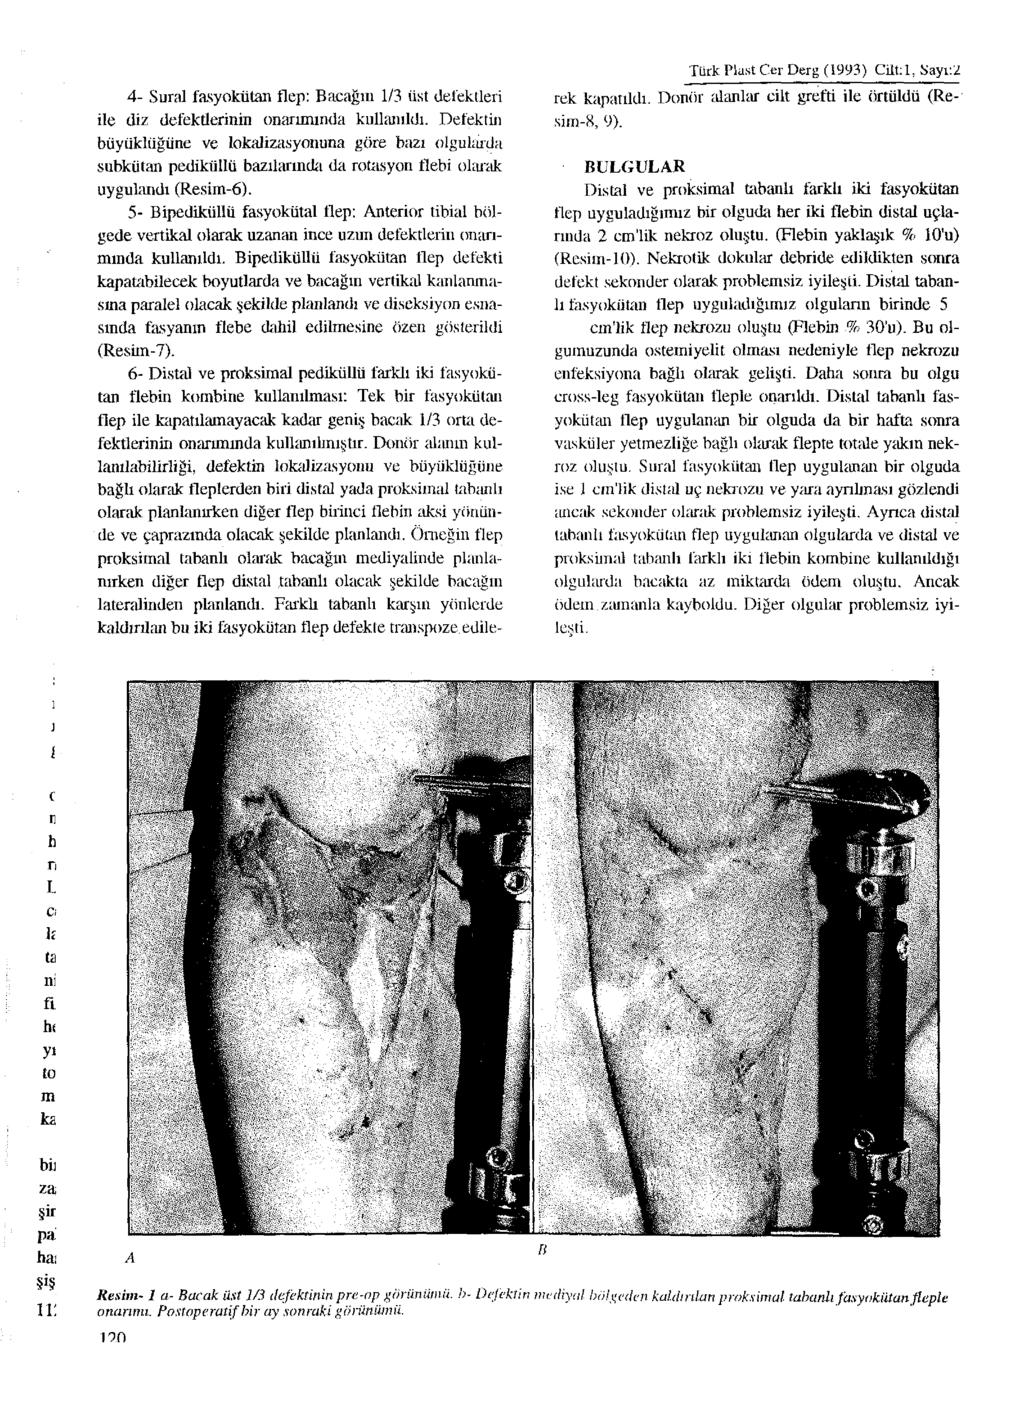 4- Sural fasyokütan flep: Bacağın 1/3 üst defektleri ile diz defektlerinin onarımında kullanıldı.